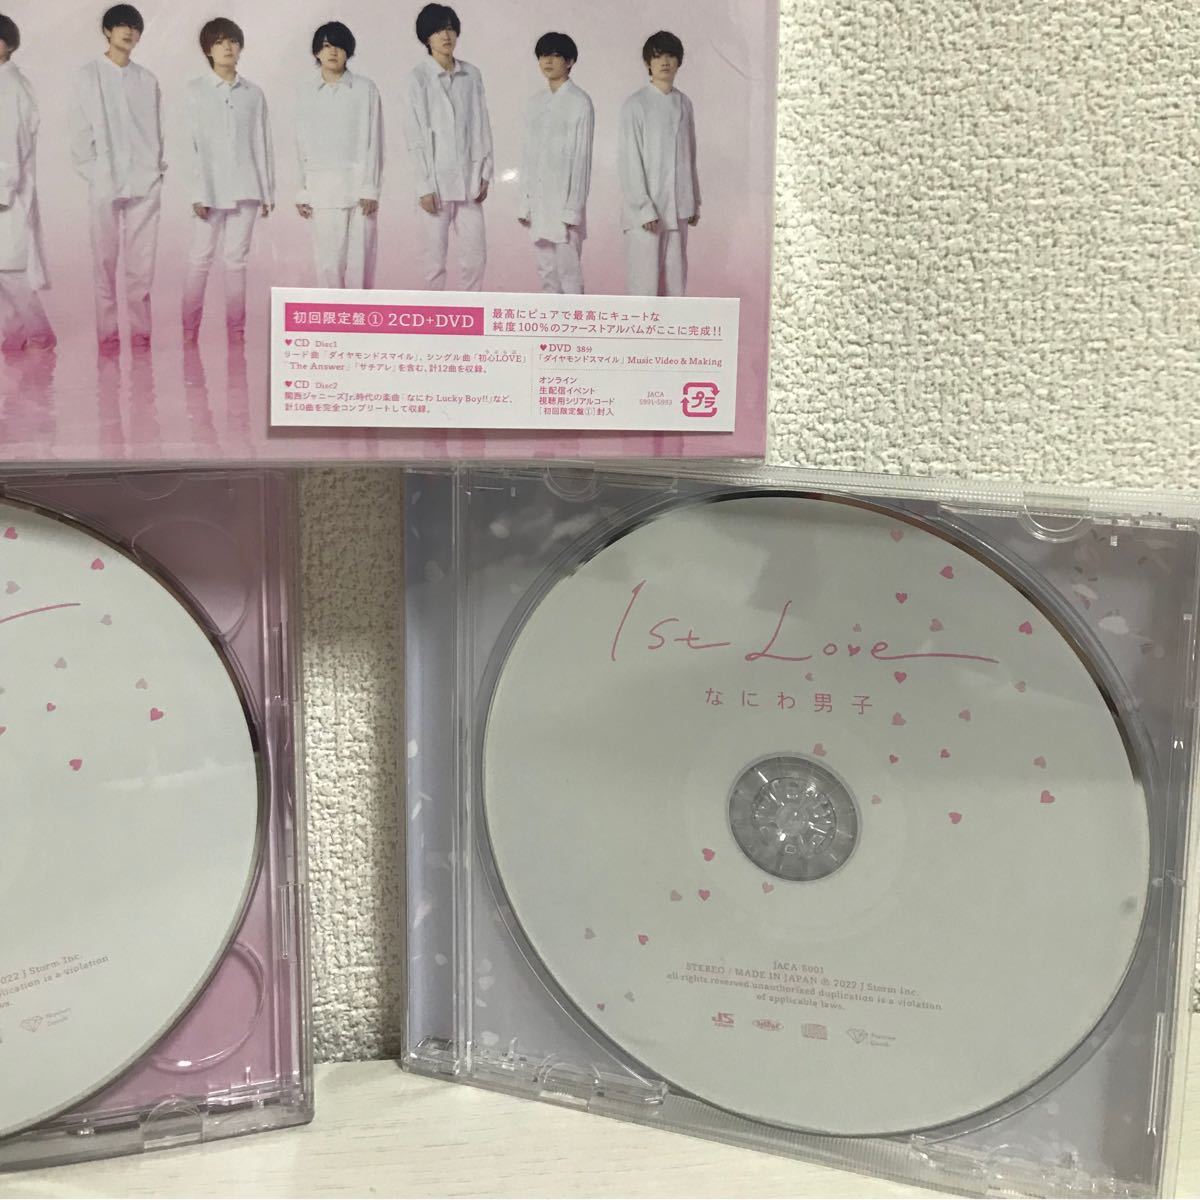 年間定番 なにわ男子 1st Love CD3形態 初回①②通常盤 DVD 特典３形態